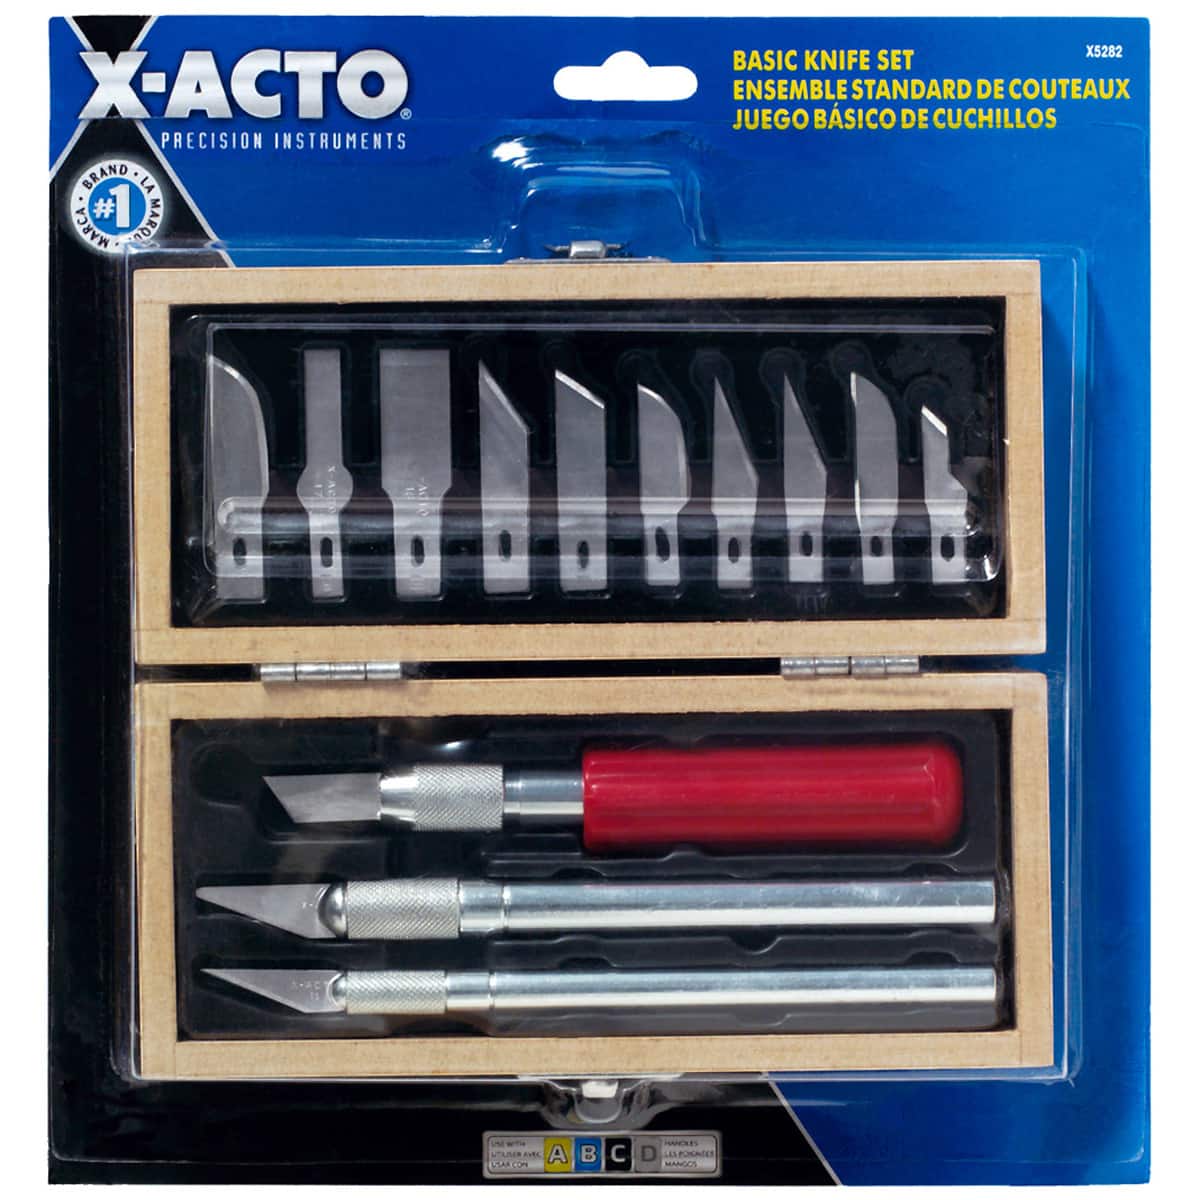 set shop, x-acto blade, X-ACTO, knife, art supplies